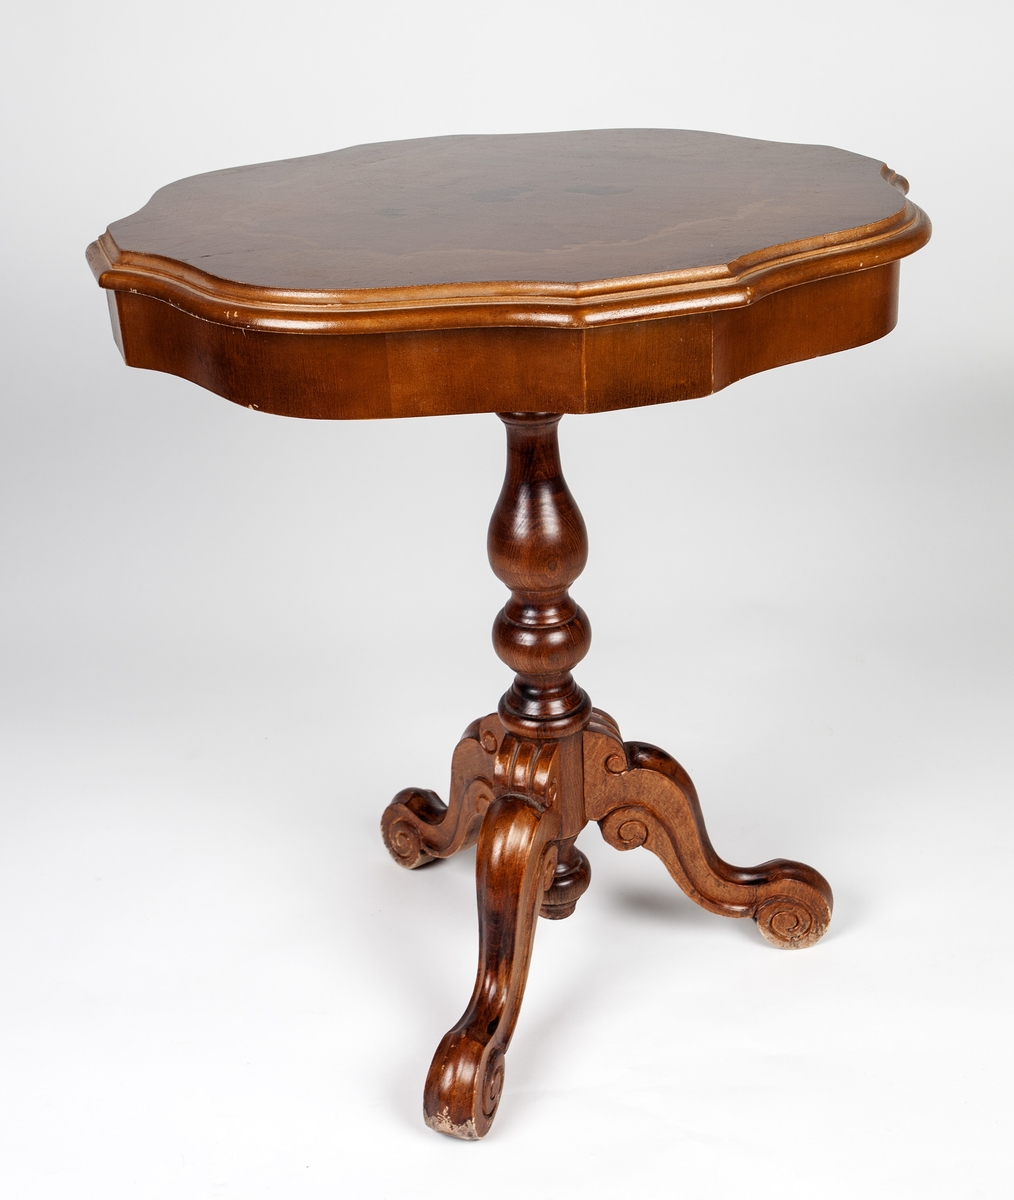 Rundt mahogny-bord på stett som hviler på tre ben. Intarsia-dekor på platen, blomster og akantusranker